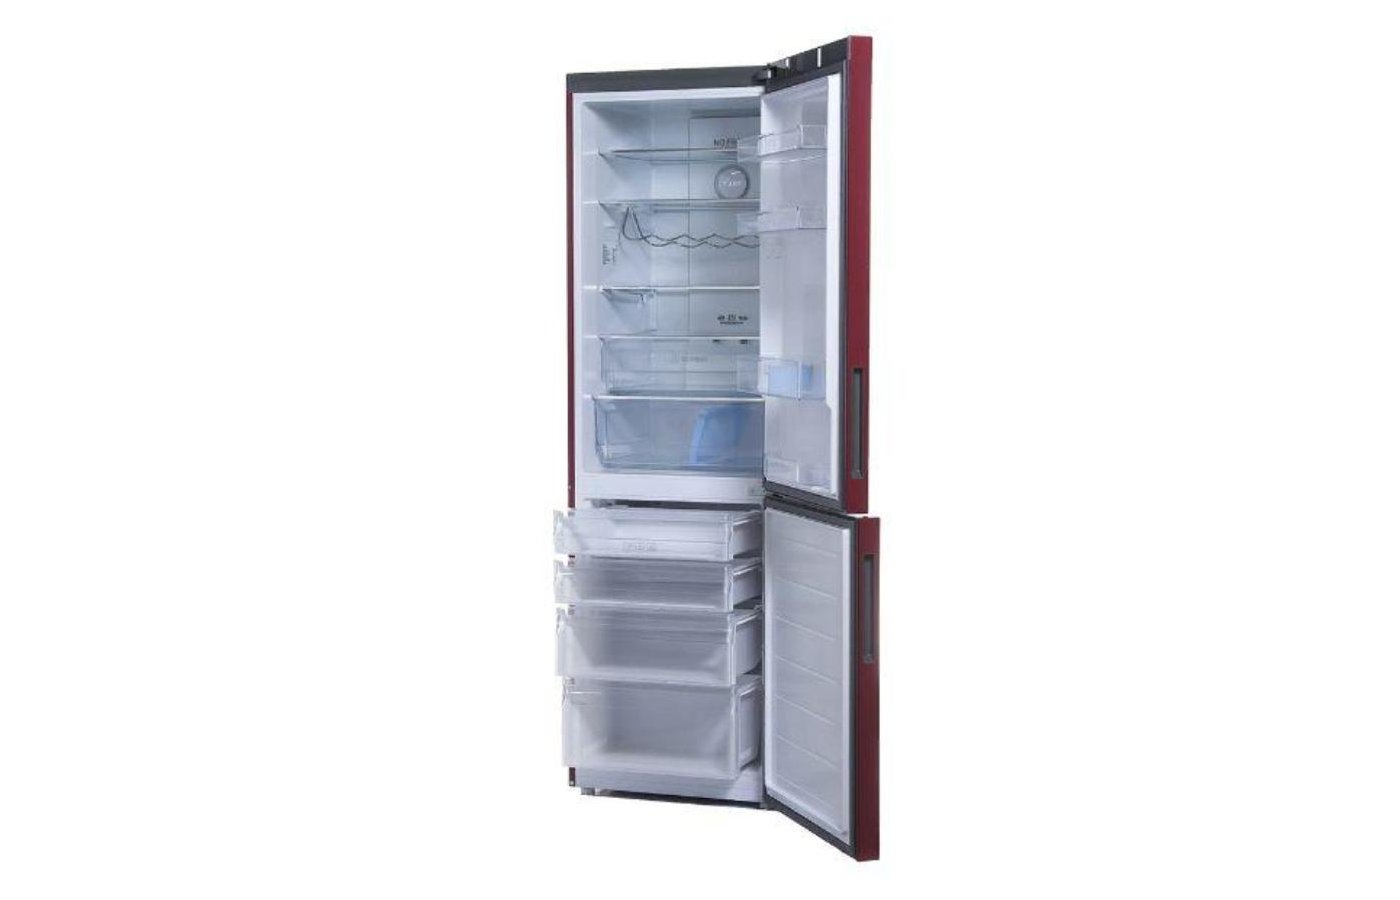 Haier c2f636c. Холодильник Haier c2f636crrg. Холодильник Haier c2f636crrg красный. Haier c2f636crrg красный. Холодильник Хайер 636.